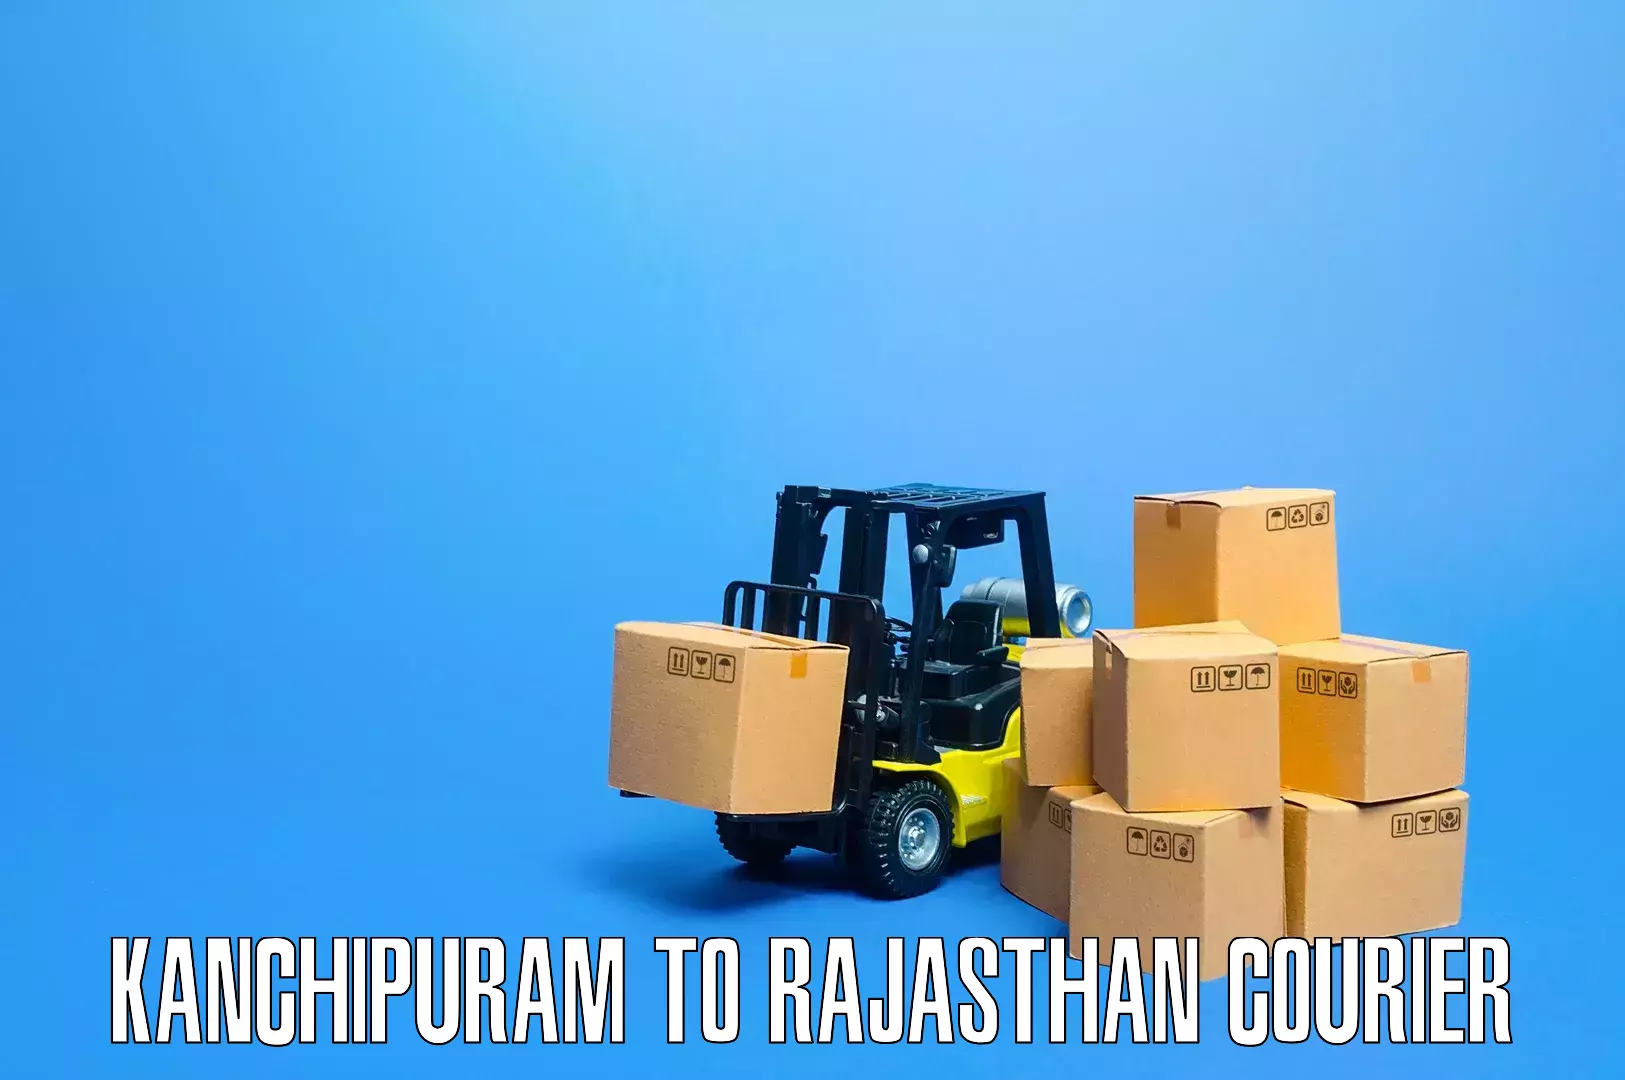 Premium furniture transport in Kanchipuram to Mandalgarh